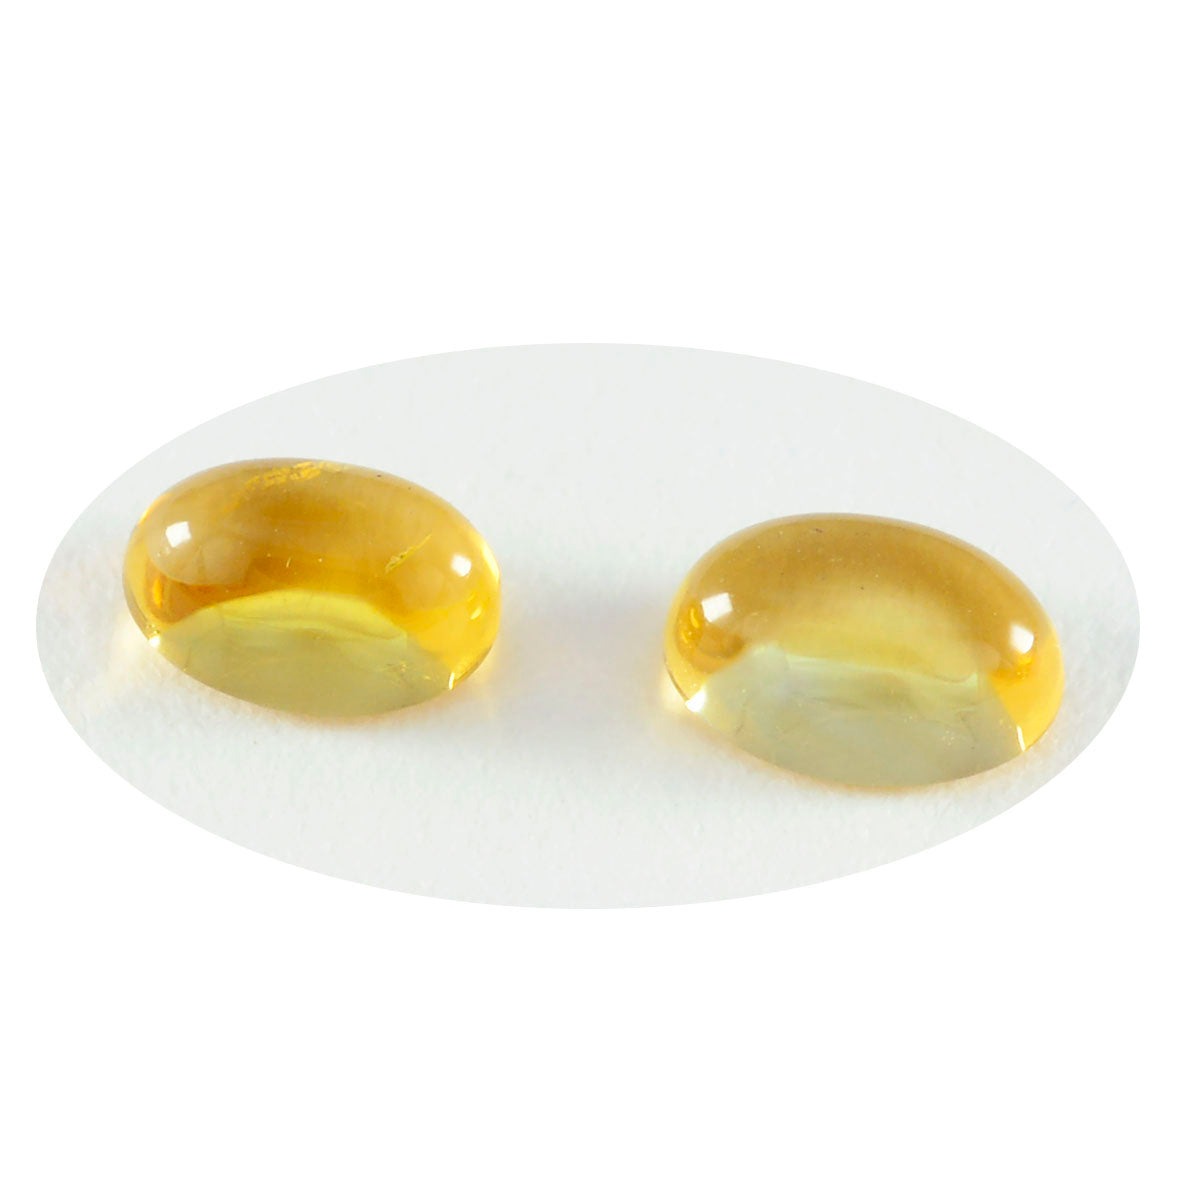 riyogems 1шт желтый цитрин кабошон 9х11 мм овальная форма драгоценный камень отличного качества